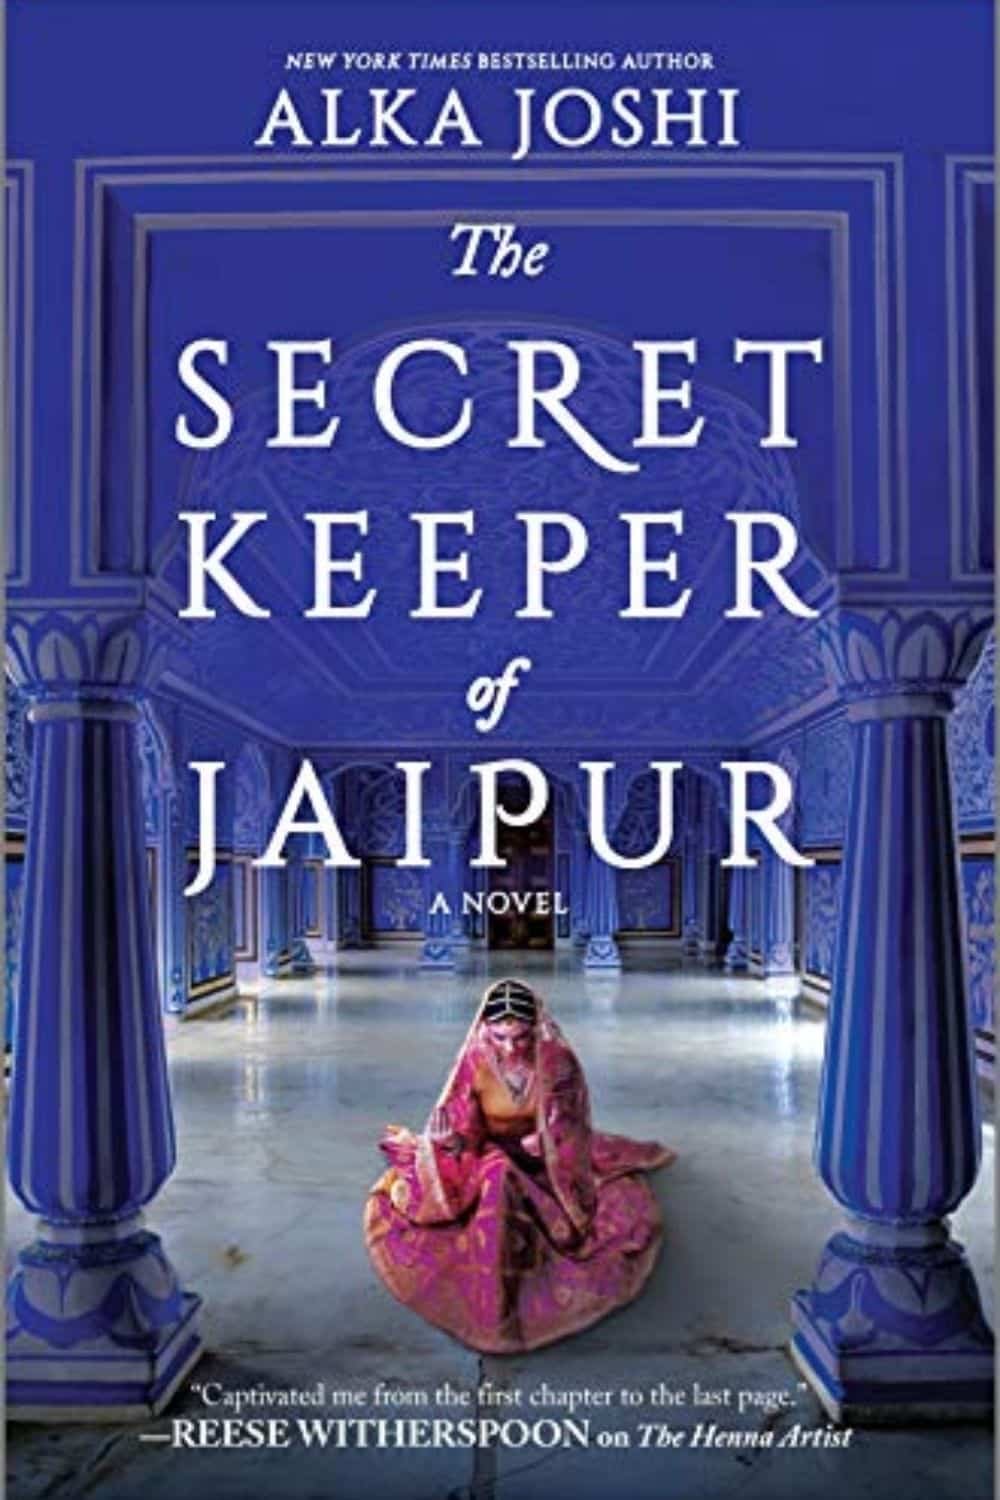 El guardián secreto de Jaipur de Alka Joshi es atractivo, intrigante y apasionante.